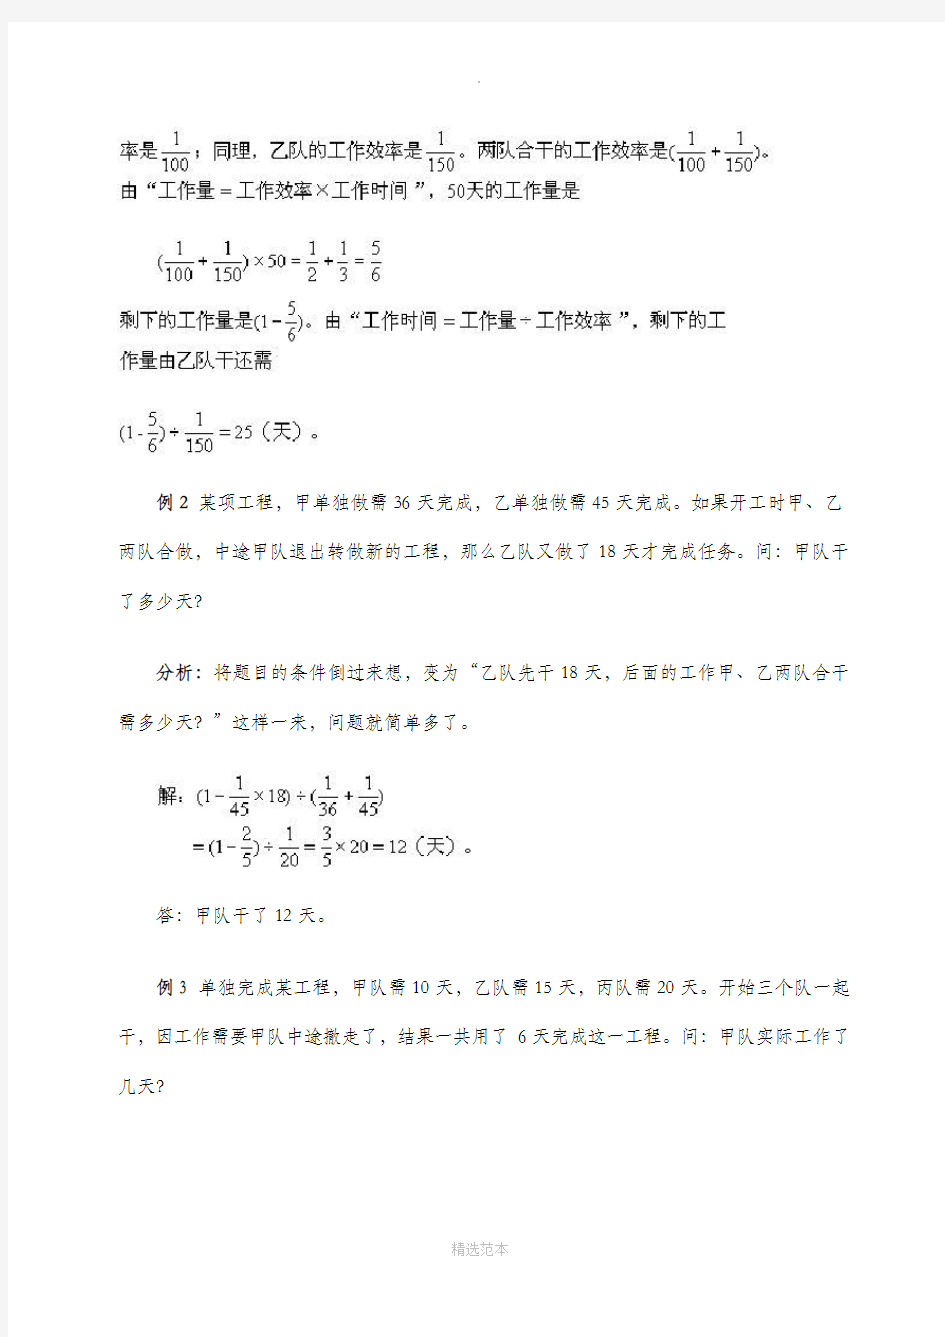 小学六年级数学工程问题例题详解及练习(有答案)92885